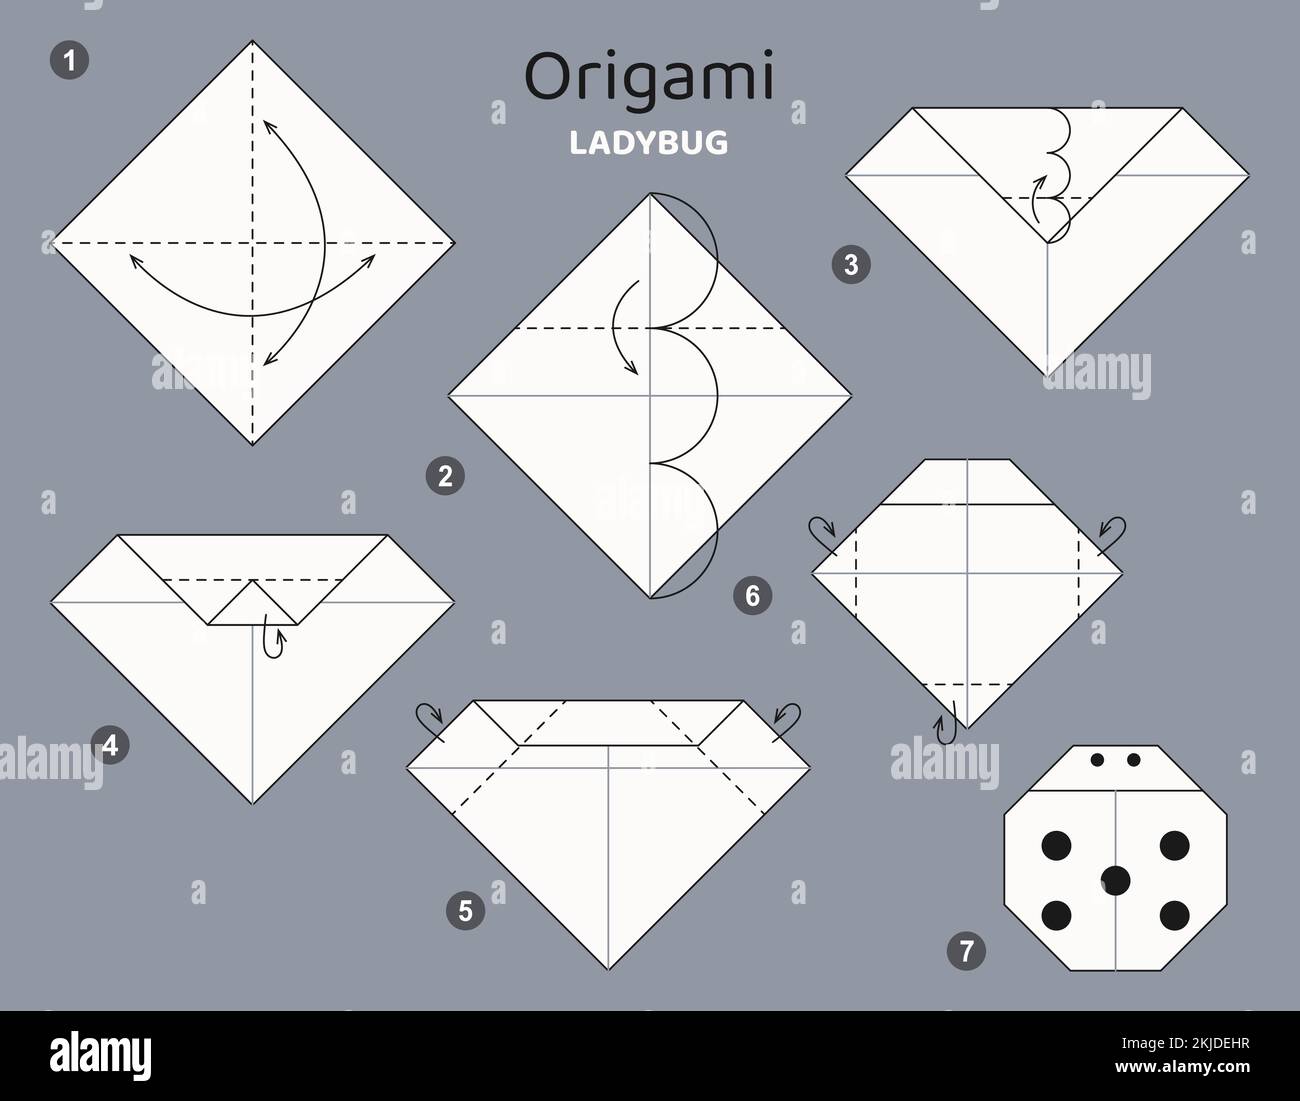 Tutorial Origami. Schema Origami per bambini. Ladybug Illustrazione Vettoriale